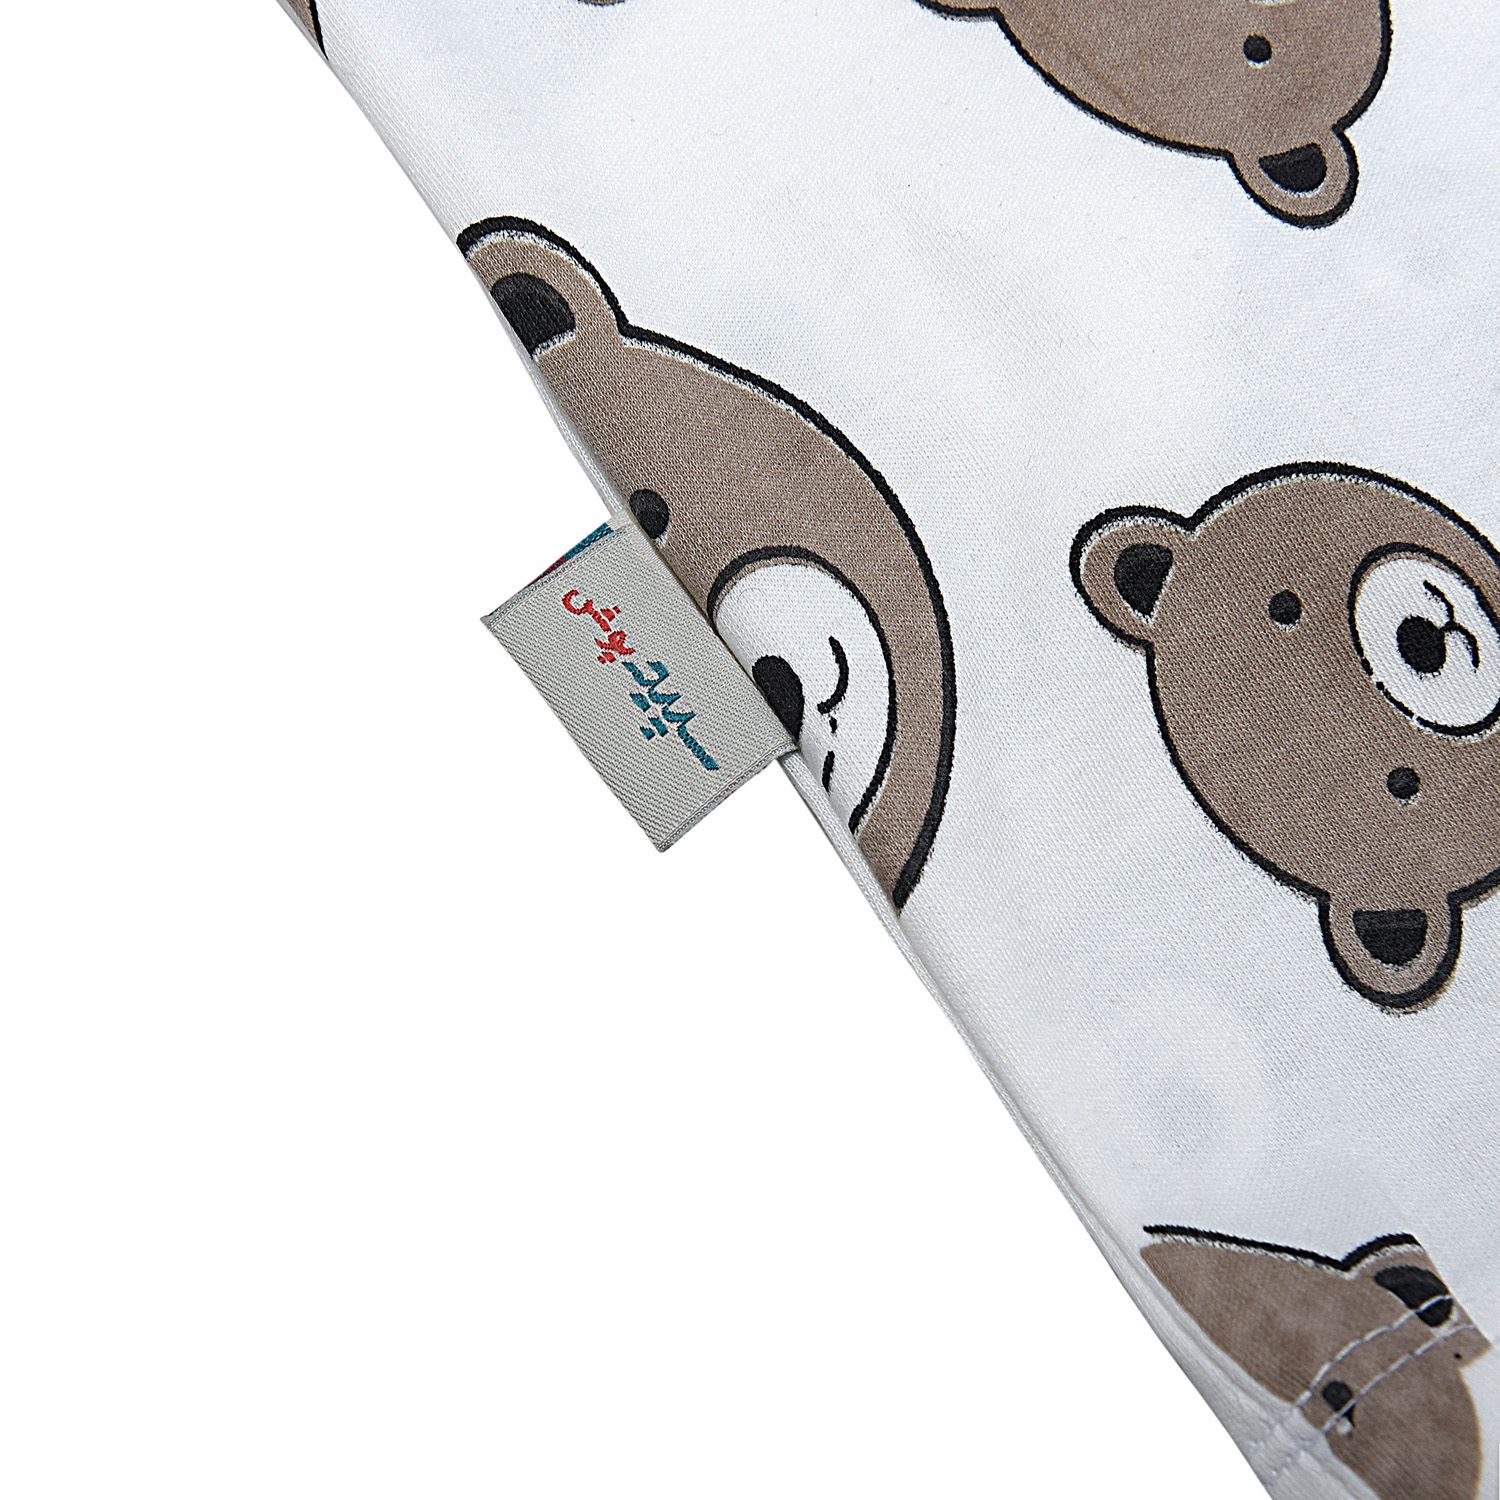 ست تی شرت آستین بلند و شلوار بچگانه سپیدپوش مدل خرس شکلاتی کد 1402753 -  - 7